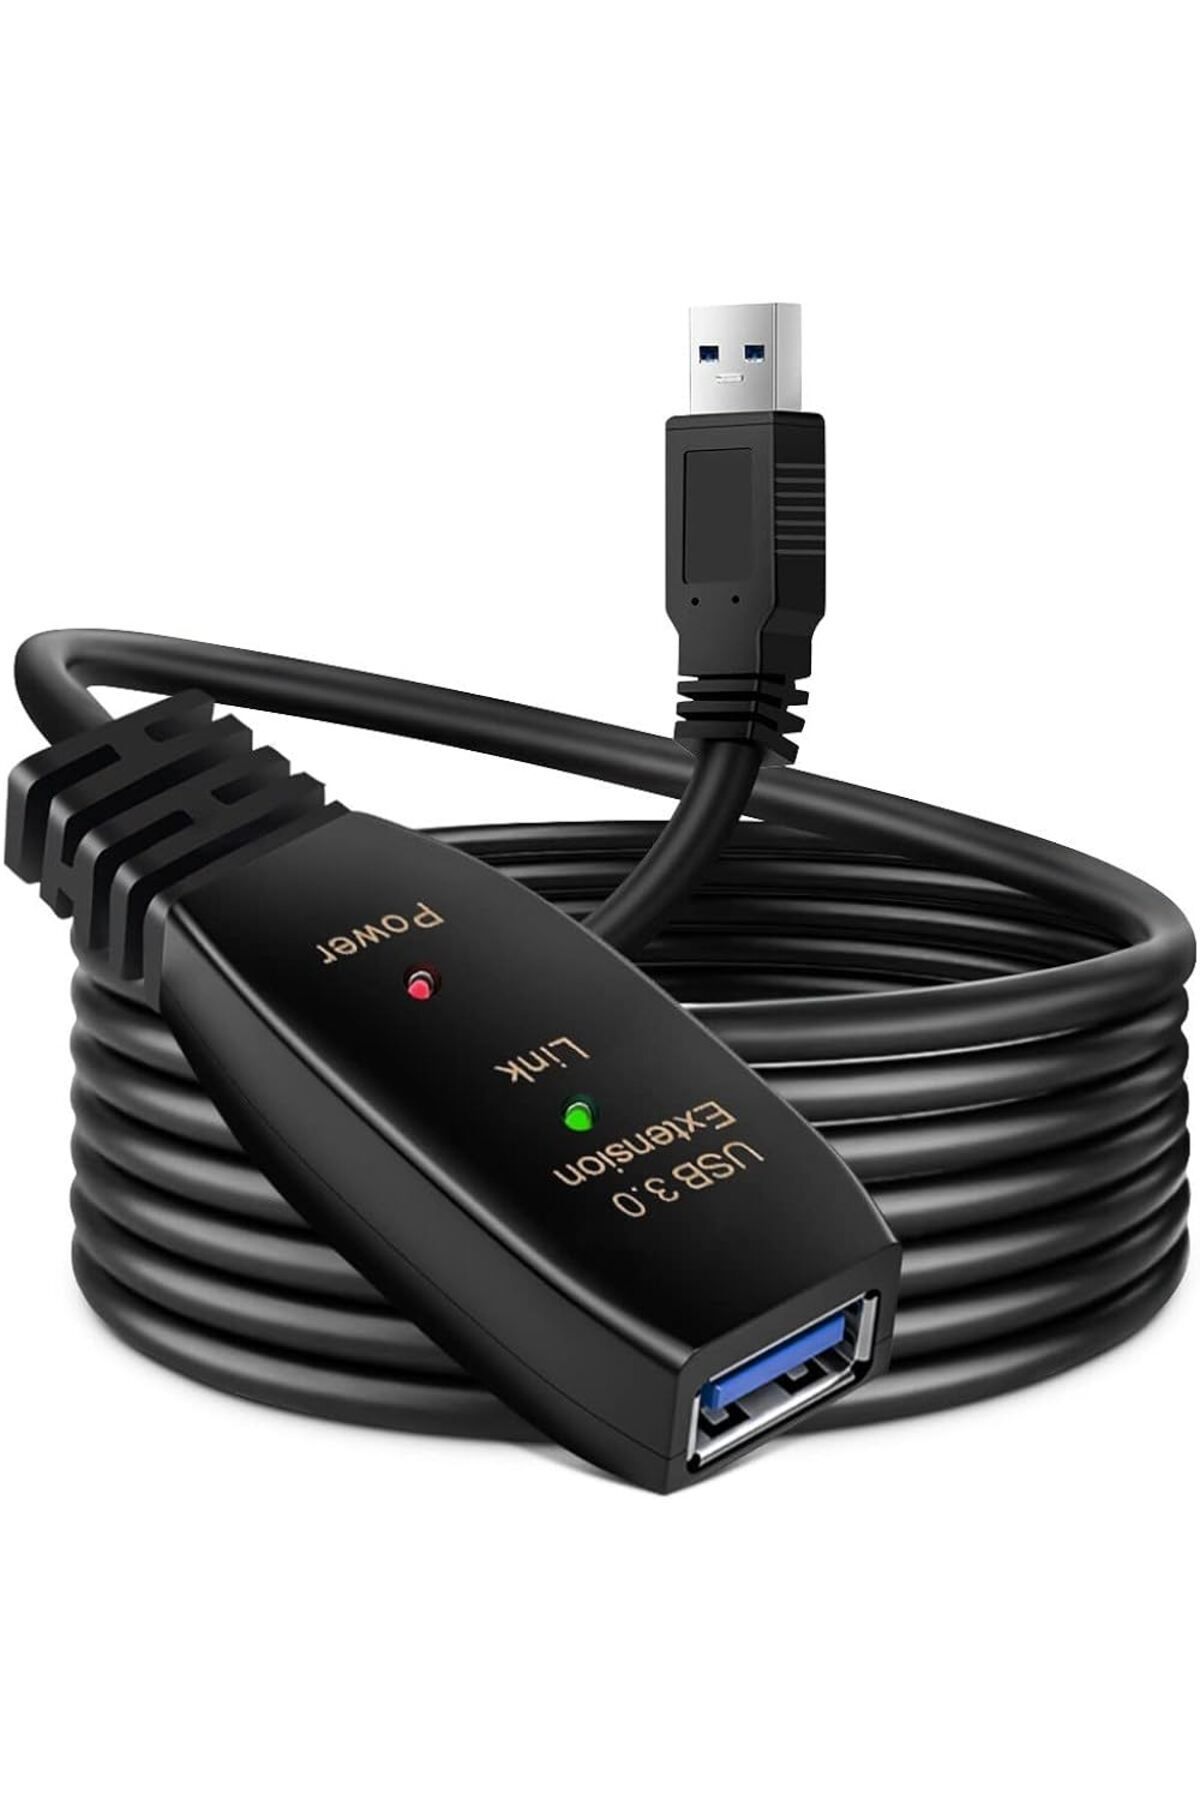 Link USB Uzatma Kablosu USB 3.0 Aktif Tekrarlayıcı ve Sinyal Güçlendirmeli Oyun Konsolu ve PC (2 metre)